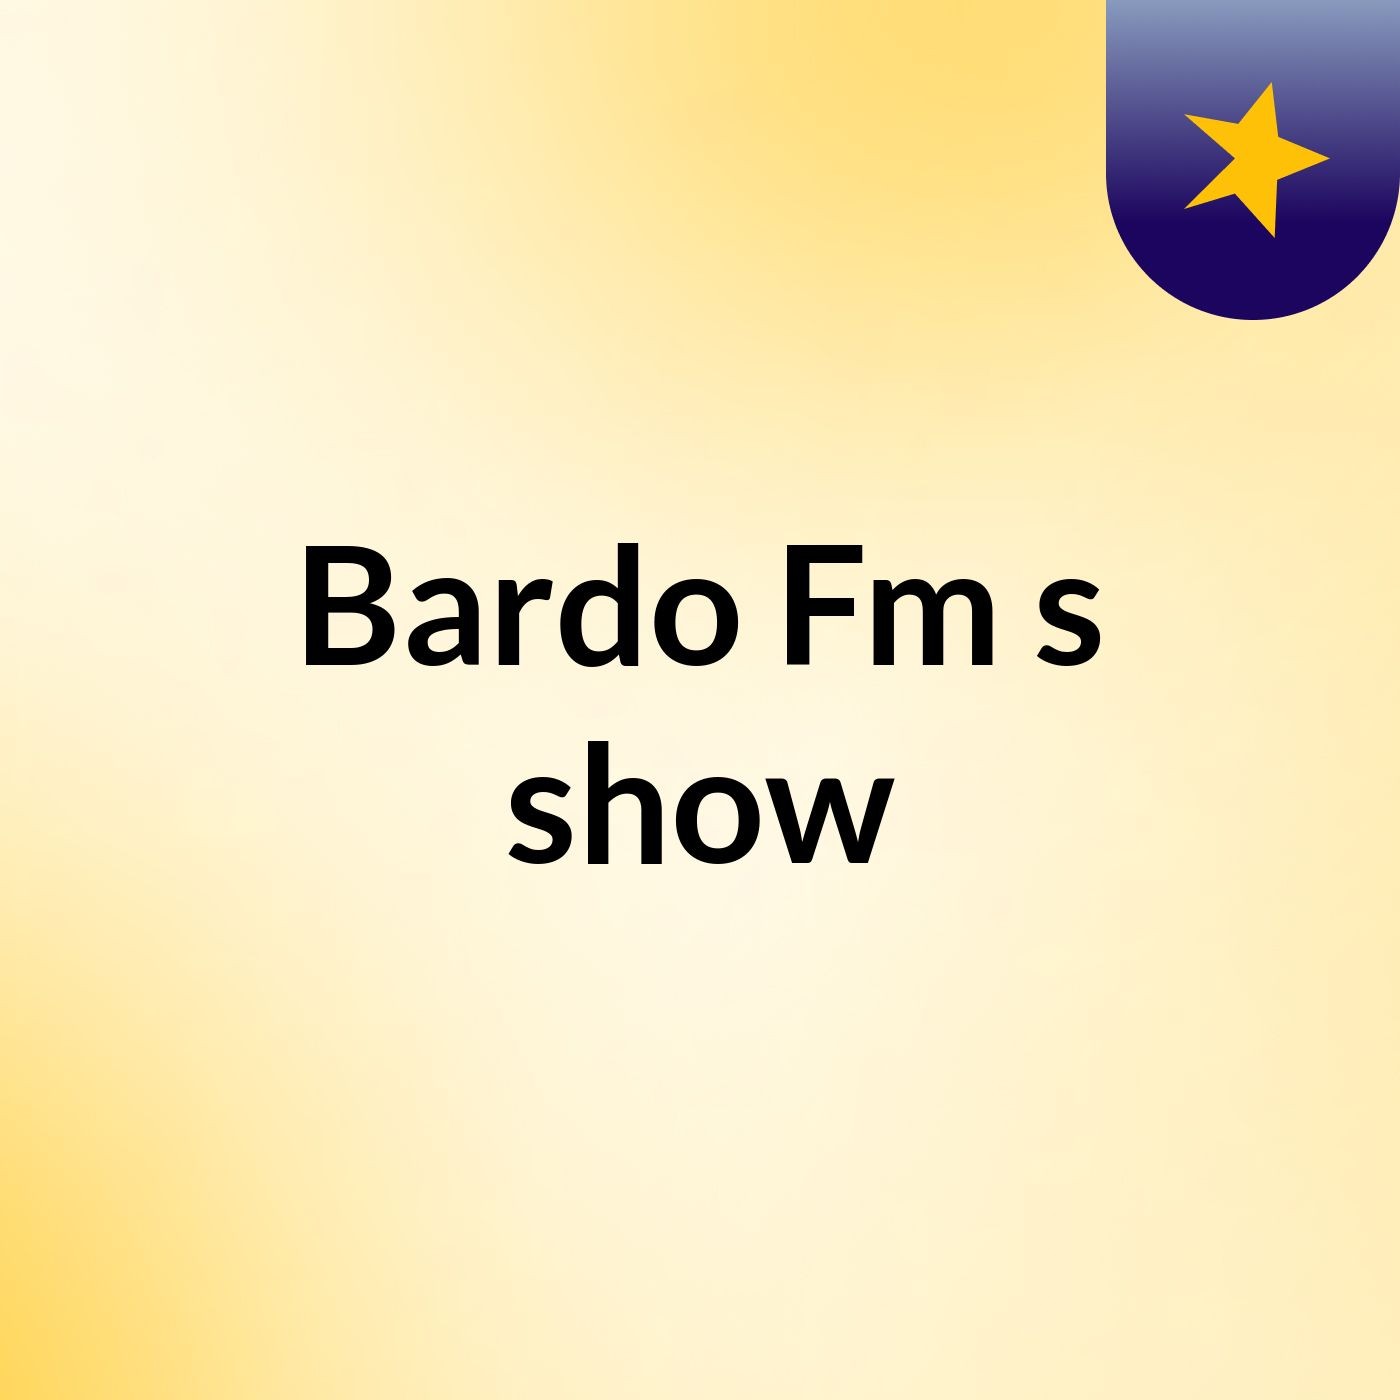 Bardo Fm's show